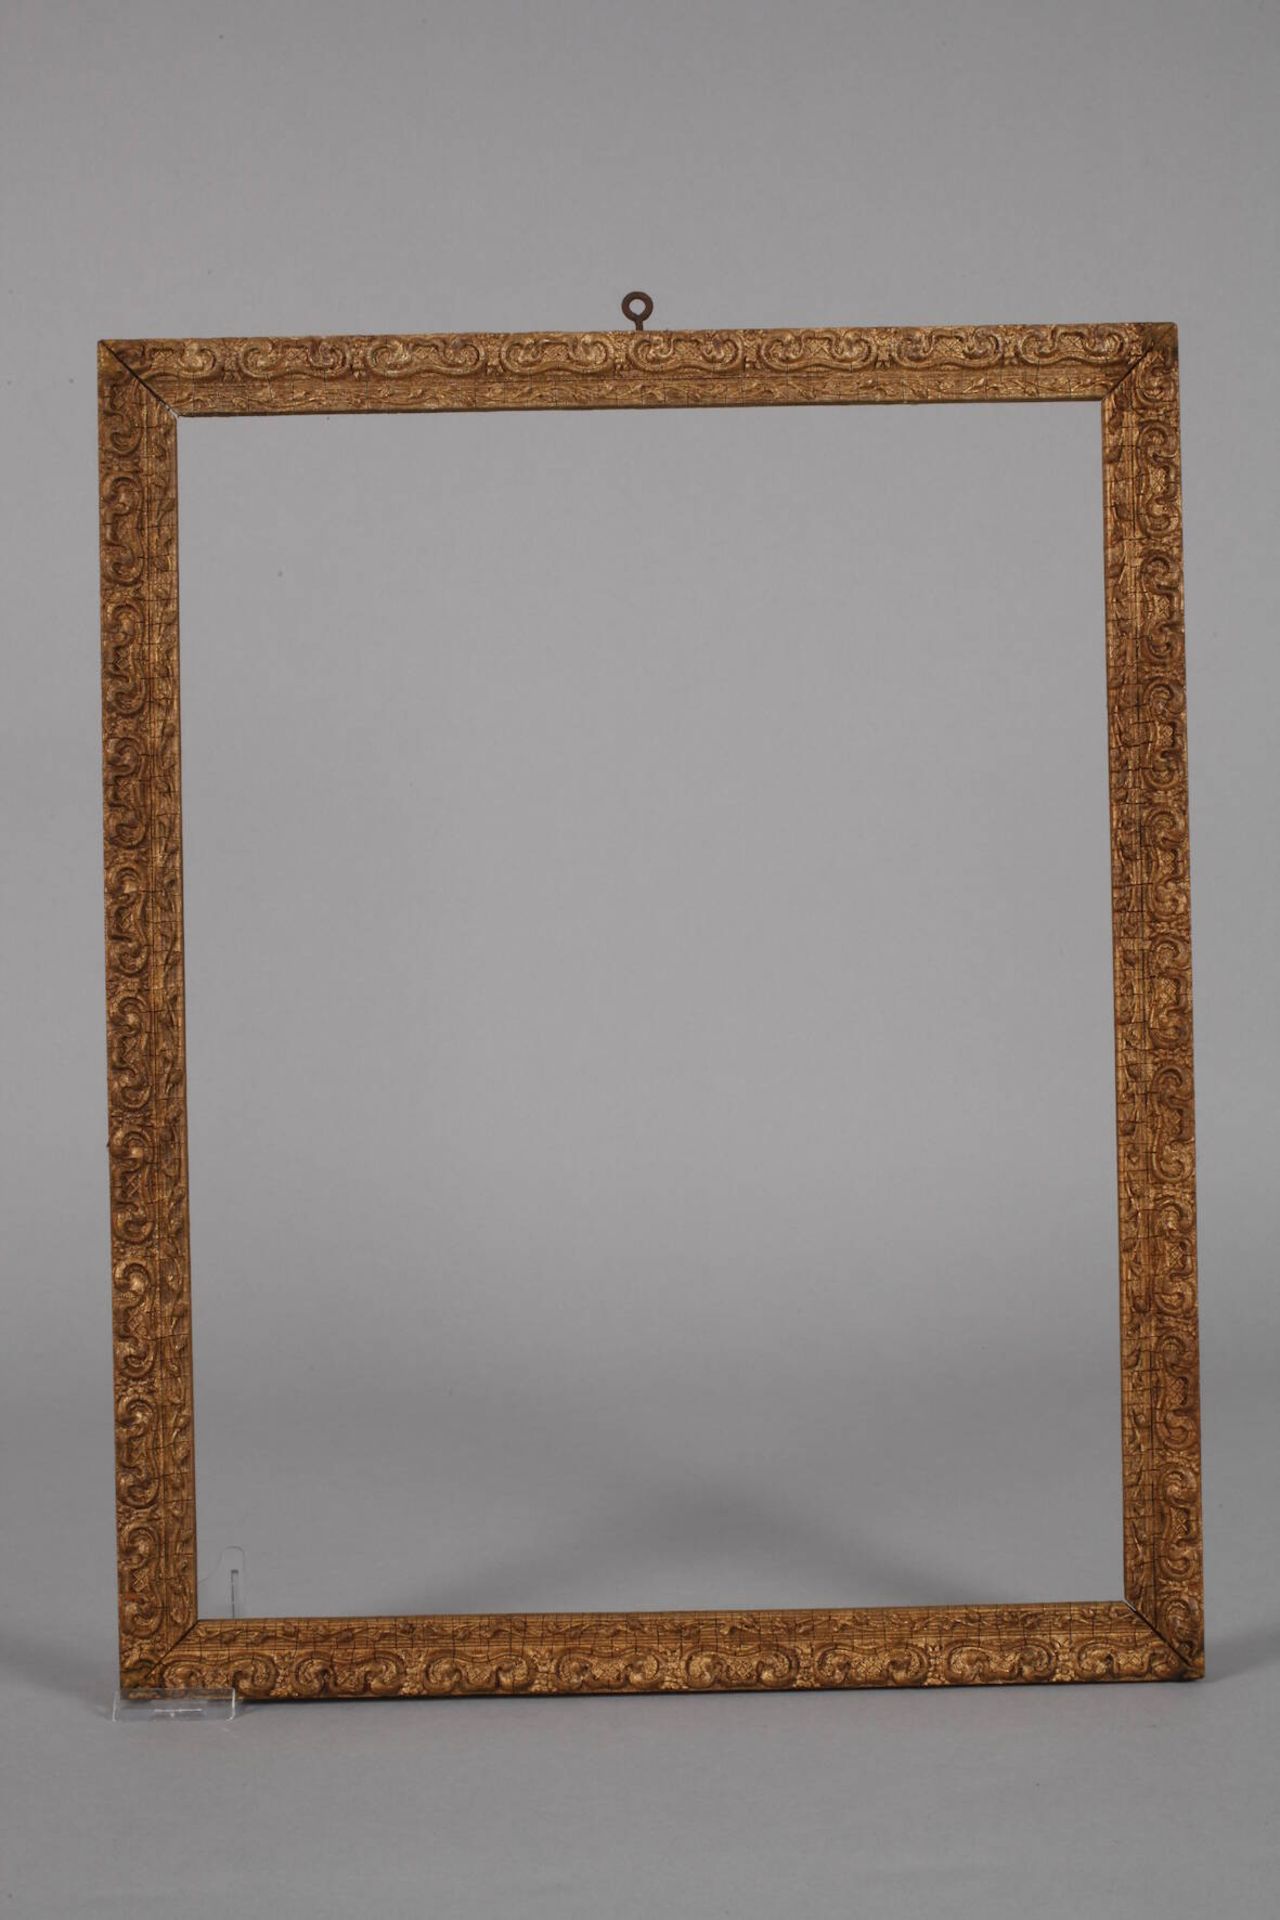 Drei StuckleistenEnde 19. Jh., ca. 2,5 cm breite, leicht steigend profilierte gestuckte Holzleisten, - Bild 4 aus 5